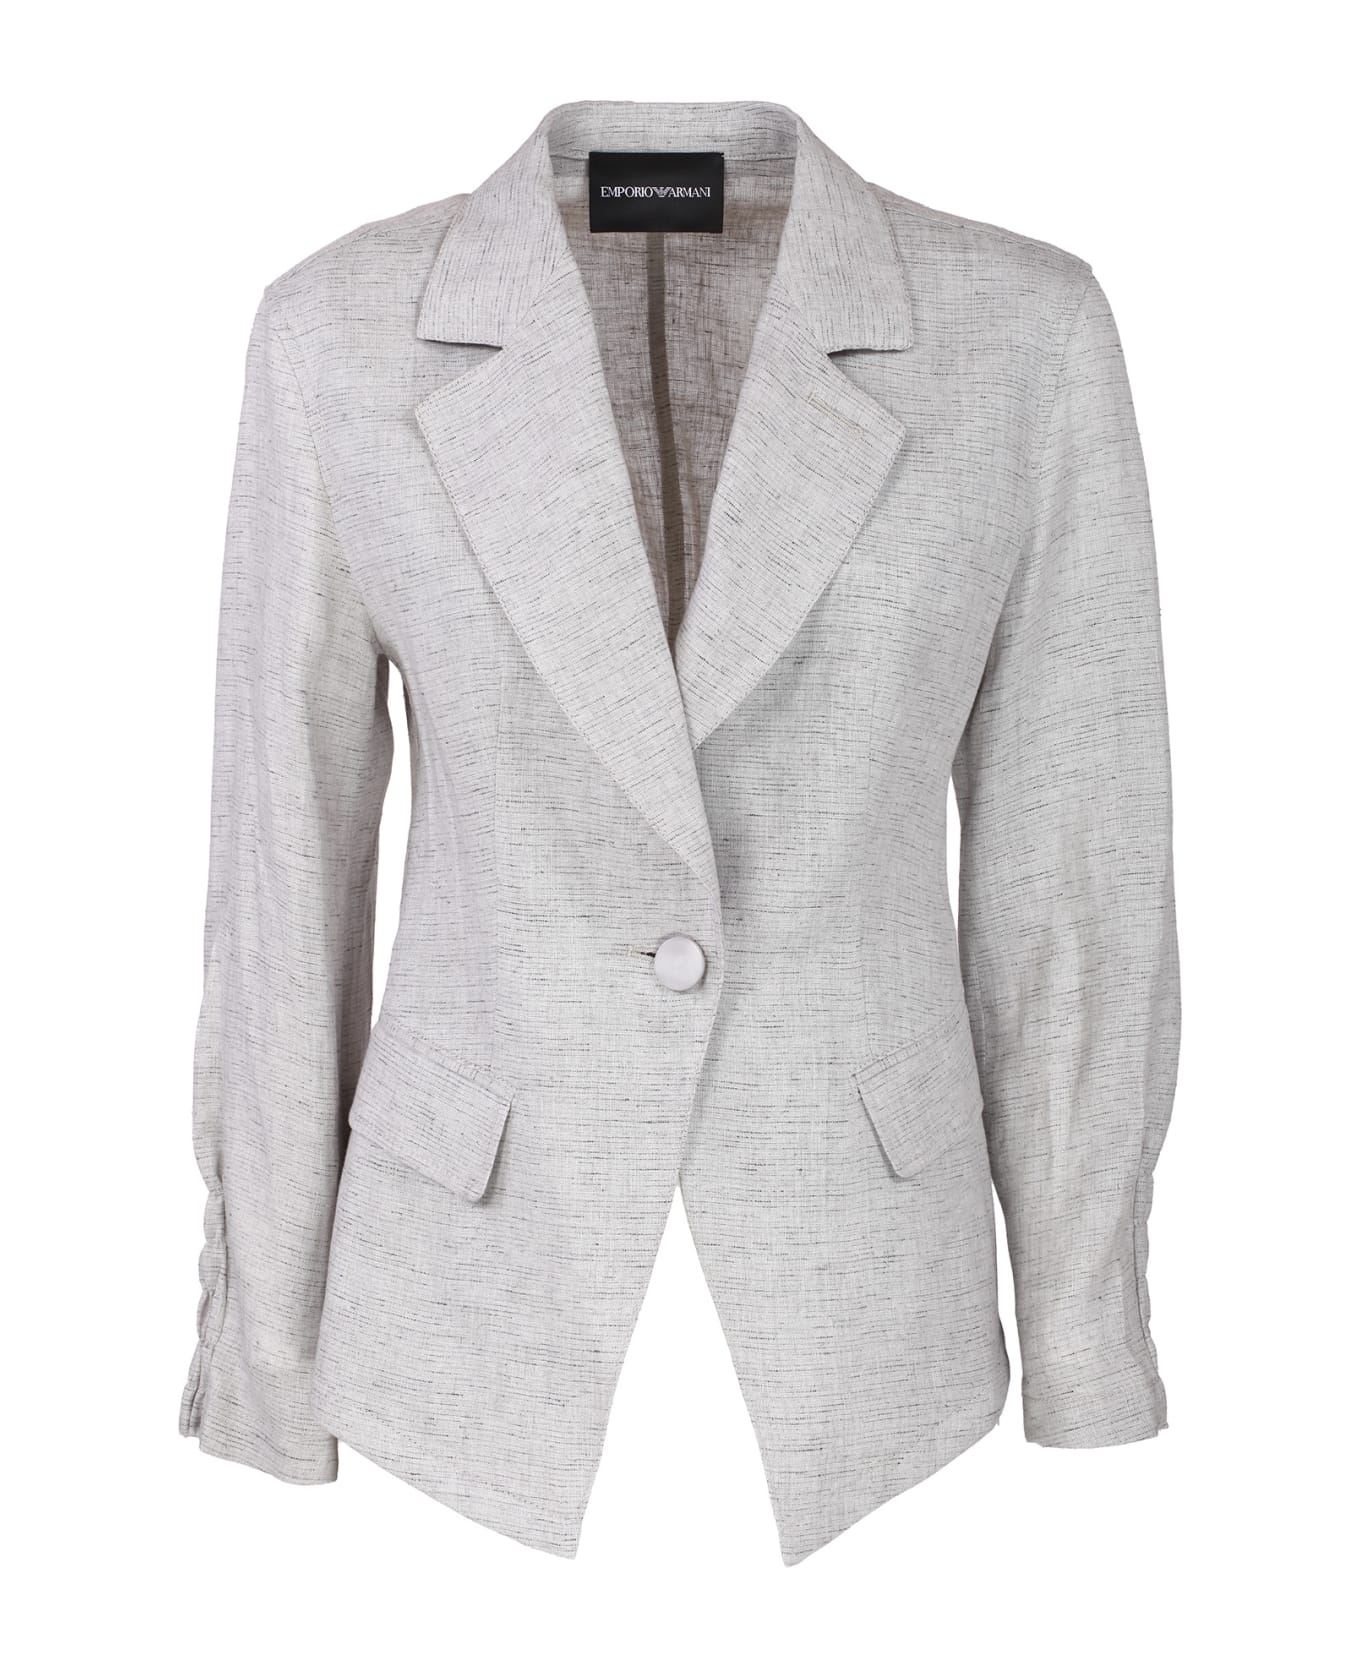 Emporio Armani Linen Jacket - Grey